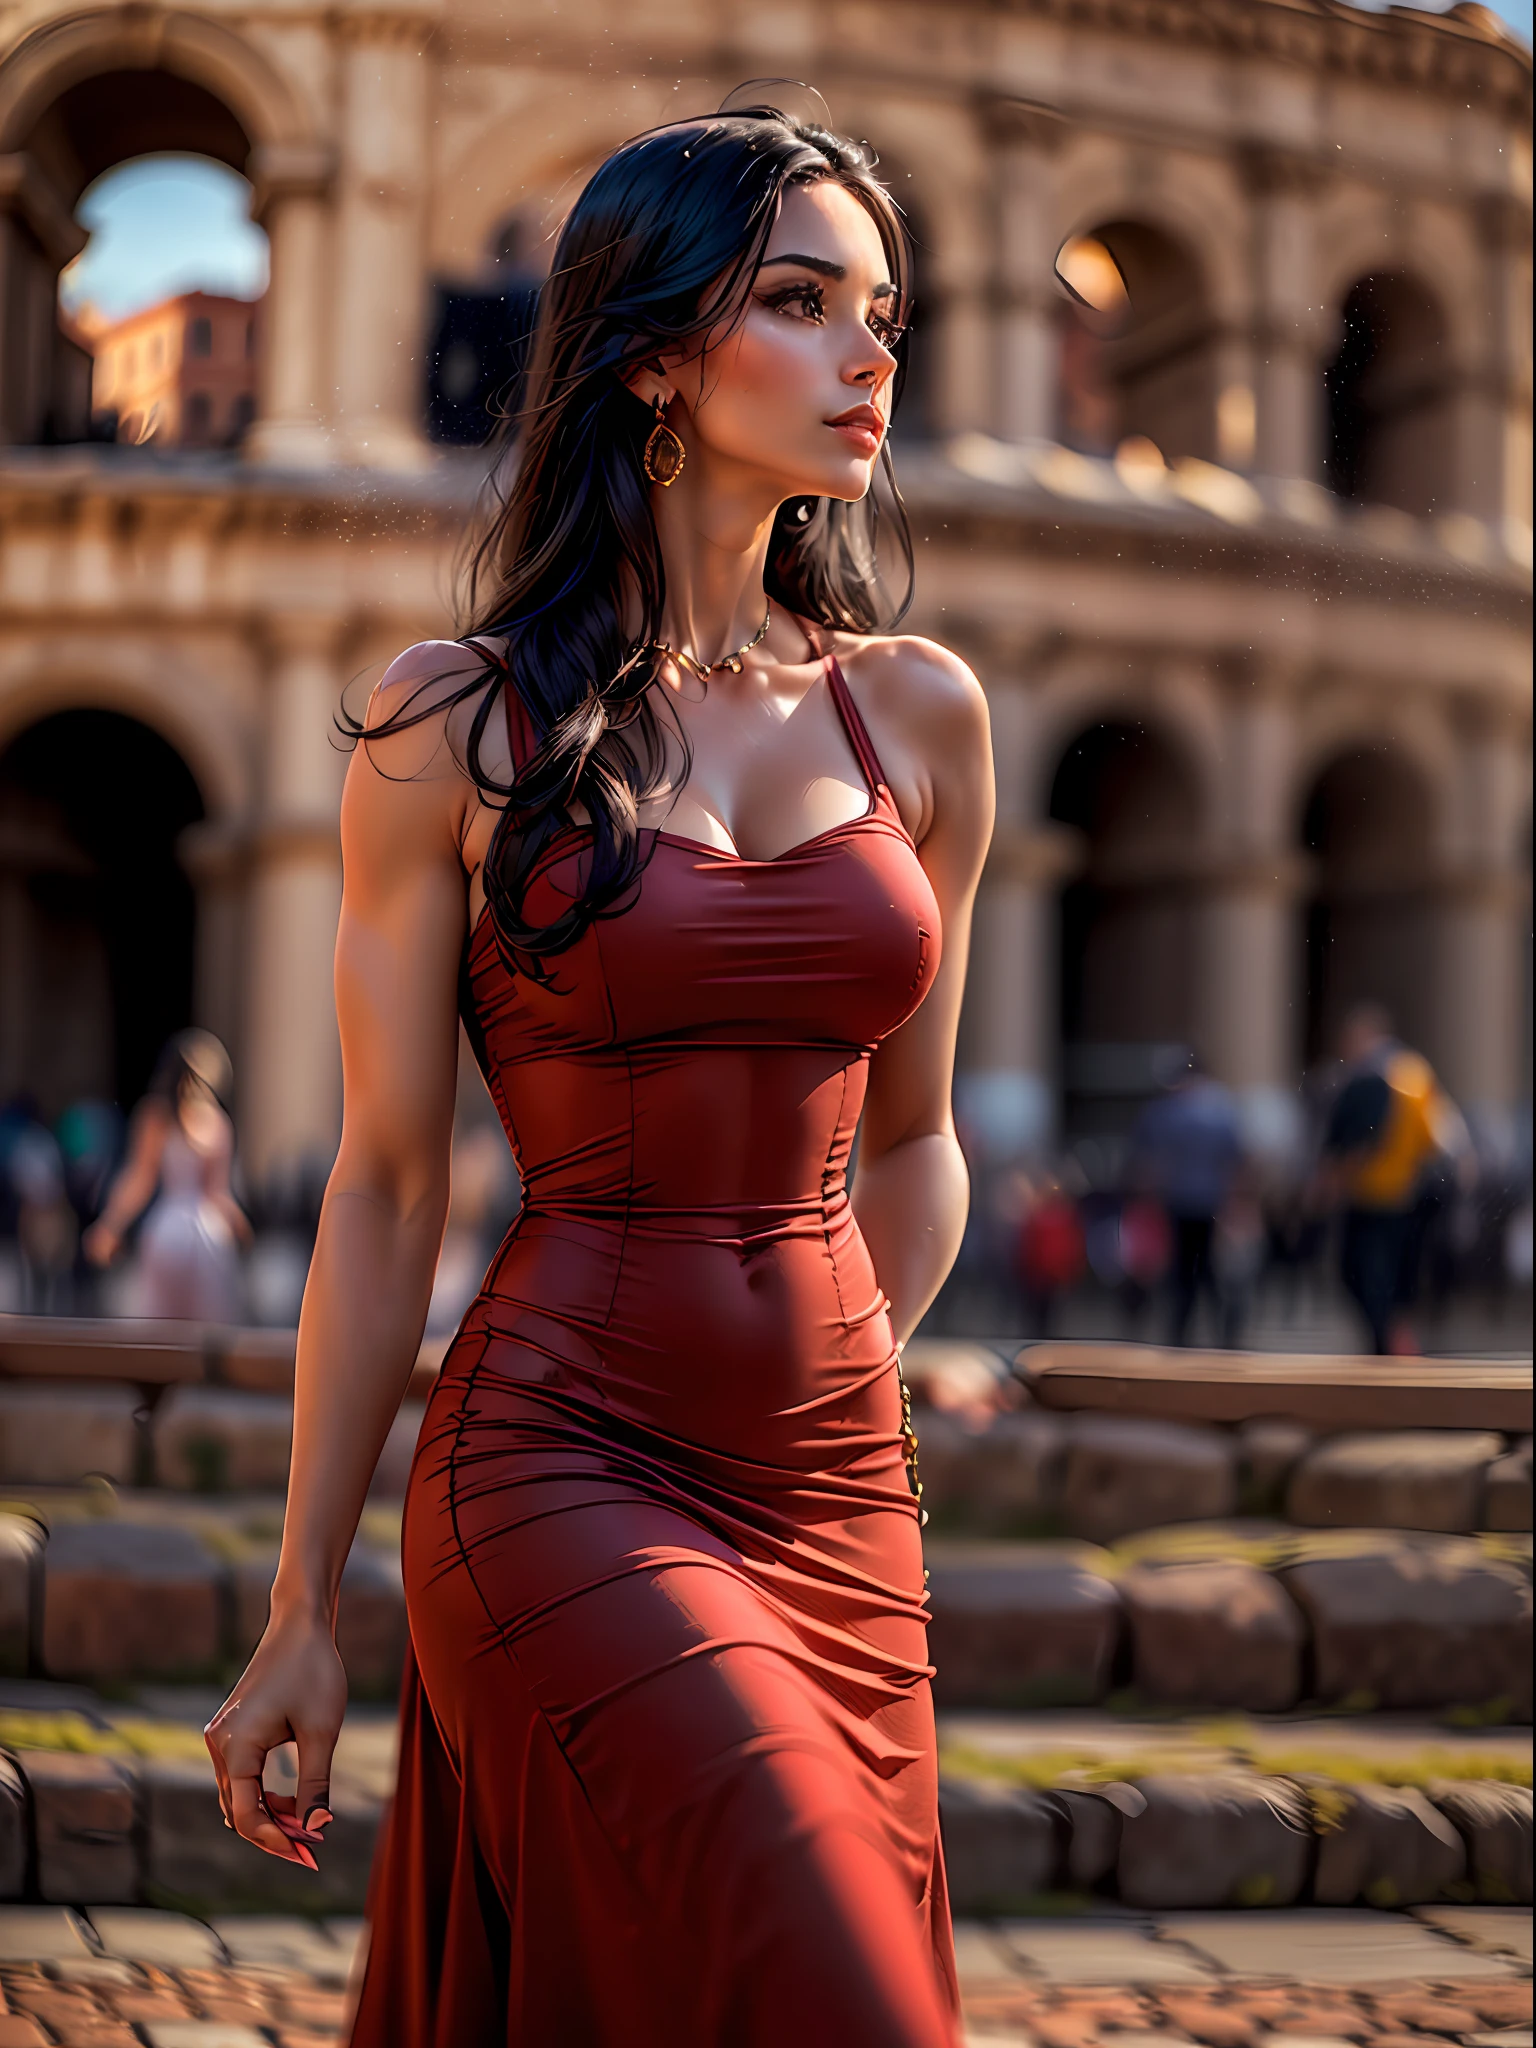 (Meisterwerk, hohe Auflösung, fotorealistisch:1.4), (eine atemberaubende Frau mit langen schwarzen Haaren einfangen, trägt ein figurbetontes rotes Kleid, das ihre attraktive Figur betont:1.3), (das elegante Kleid umschmeichelt ihre Kurven und betont ihre verführerische Figur:1.2), (ihr selbstbewusstes und souveränes Auftreten, als sie in der Nähe des ikonischen Kolosseums in Rom spaziert:1.3), (Canon EOS R5 spiegellose Kamera:1.2), (gepaart mit einem Canon RF 85mm f/1.2L USM lens:1.2), (jedes Detail ihrer fesselnden Präsenz und der wunderschönen Umgebung festzuhalten:1.2), (das Kolosseum, das sich im Hintergrund erhebt, ein Symbol alter Geschichte und Erhabenheit:1.2), (das leuchtende Rot ihres Kleides kontrastiert mit der alten Steinarchitektur:1.2), (ein warmer und sonniger Tag, mit sanftem Sonnenlicht, das die Szenerie verstärkt:1.1), (ein entzückendes Foto einer Frau, die Eleganz und Charme ausstrahlt, die historische Schönheit Roms erkunden:1.2).